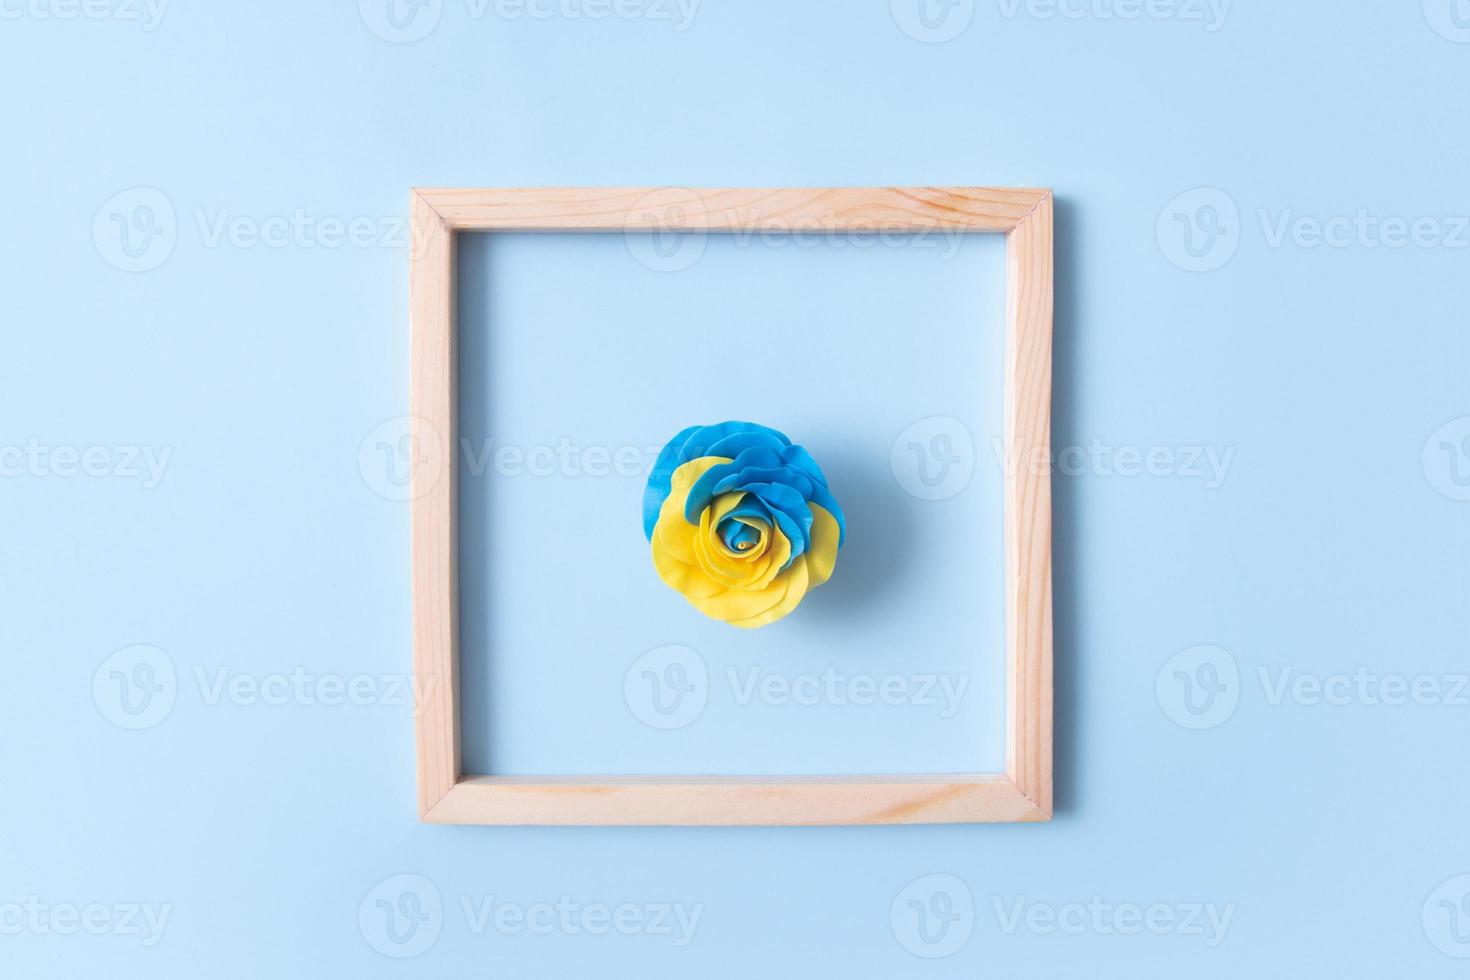 roos van de Oekraïense vlag geel-blauwe kleuren in een vierkant houten frame. minimalistisch concept foto